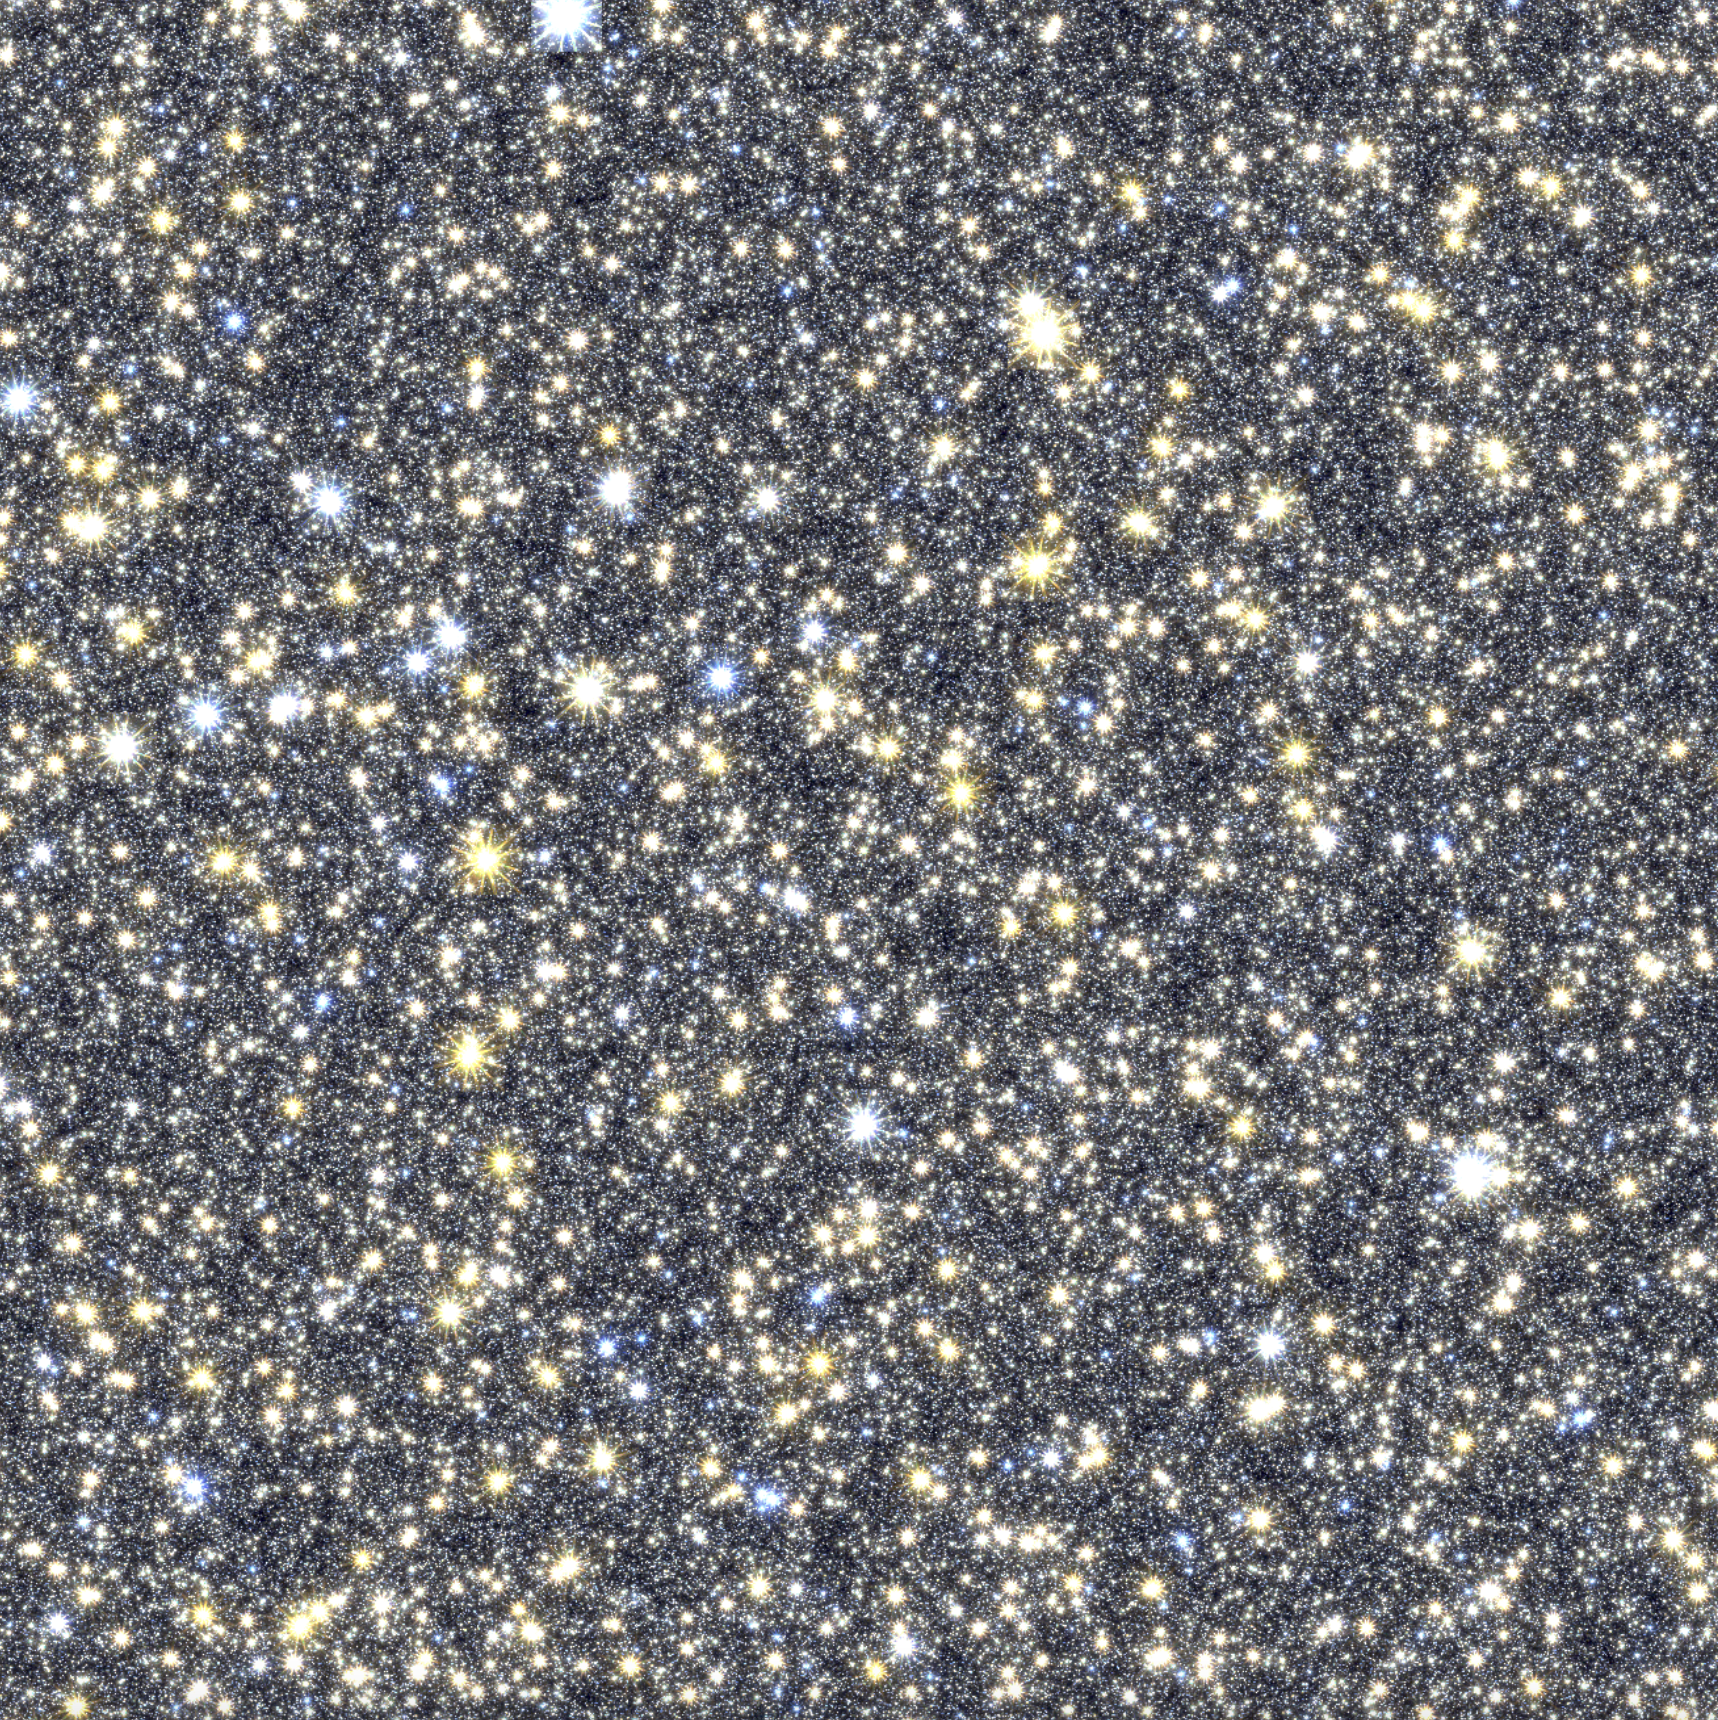 Imagen simulada de las observaciones del telescopio Grace Roman en dirección al centro de nuestra galaxia. La imagen está repleta de titilantes de luz en tonos de girs, amarillo y celeste. El fondo es negro.